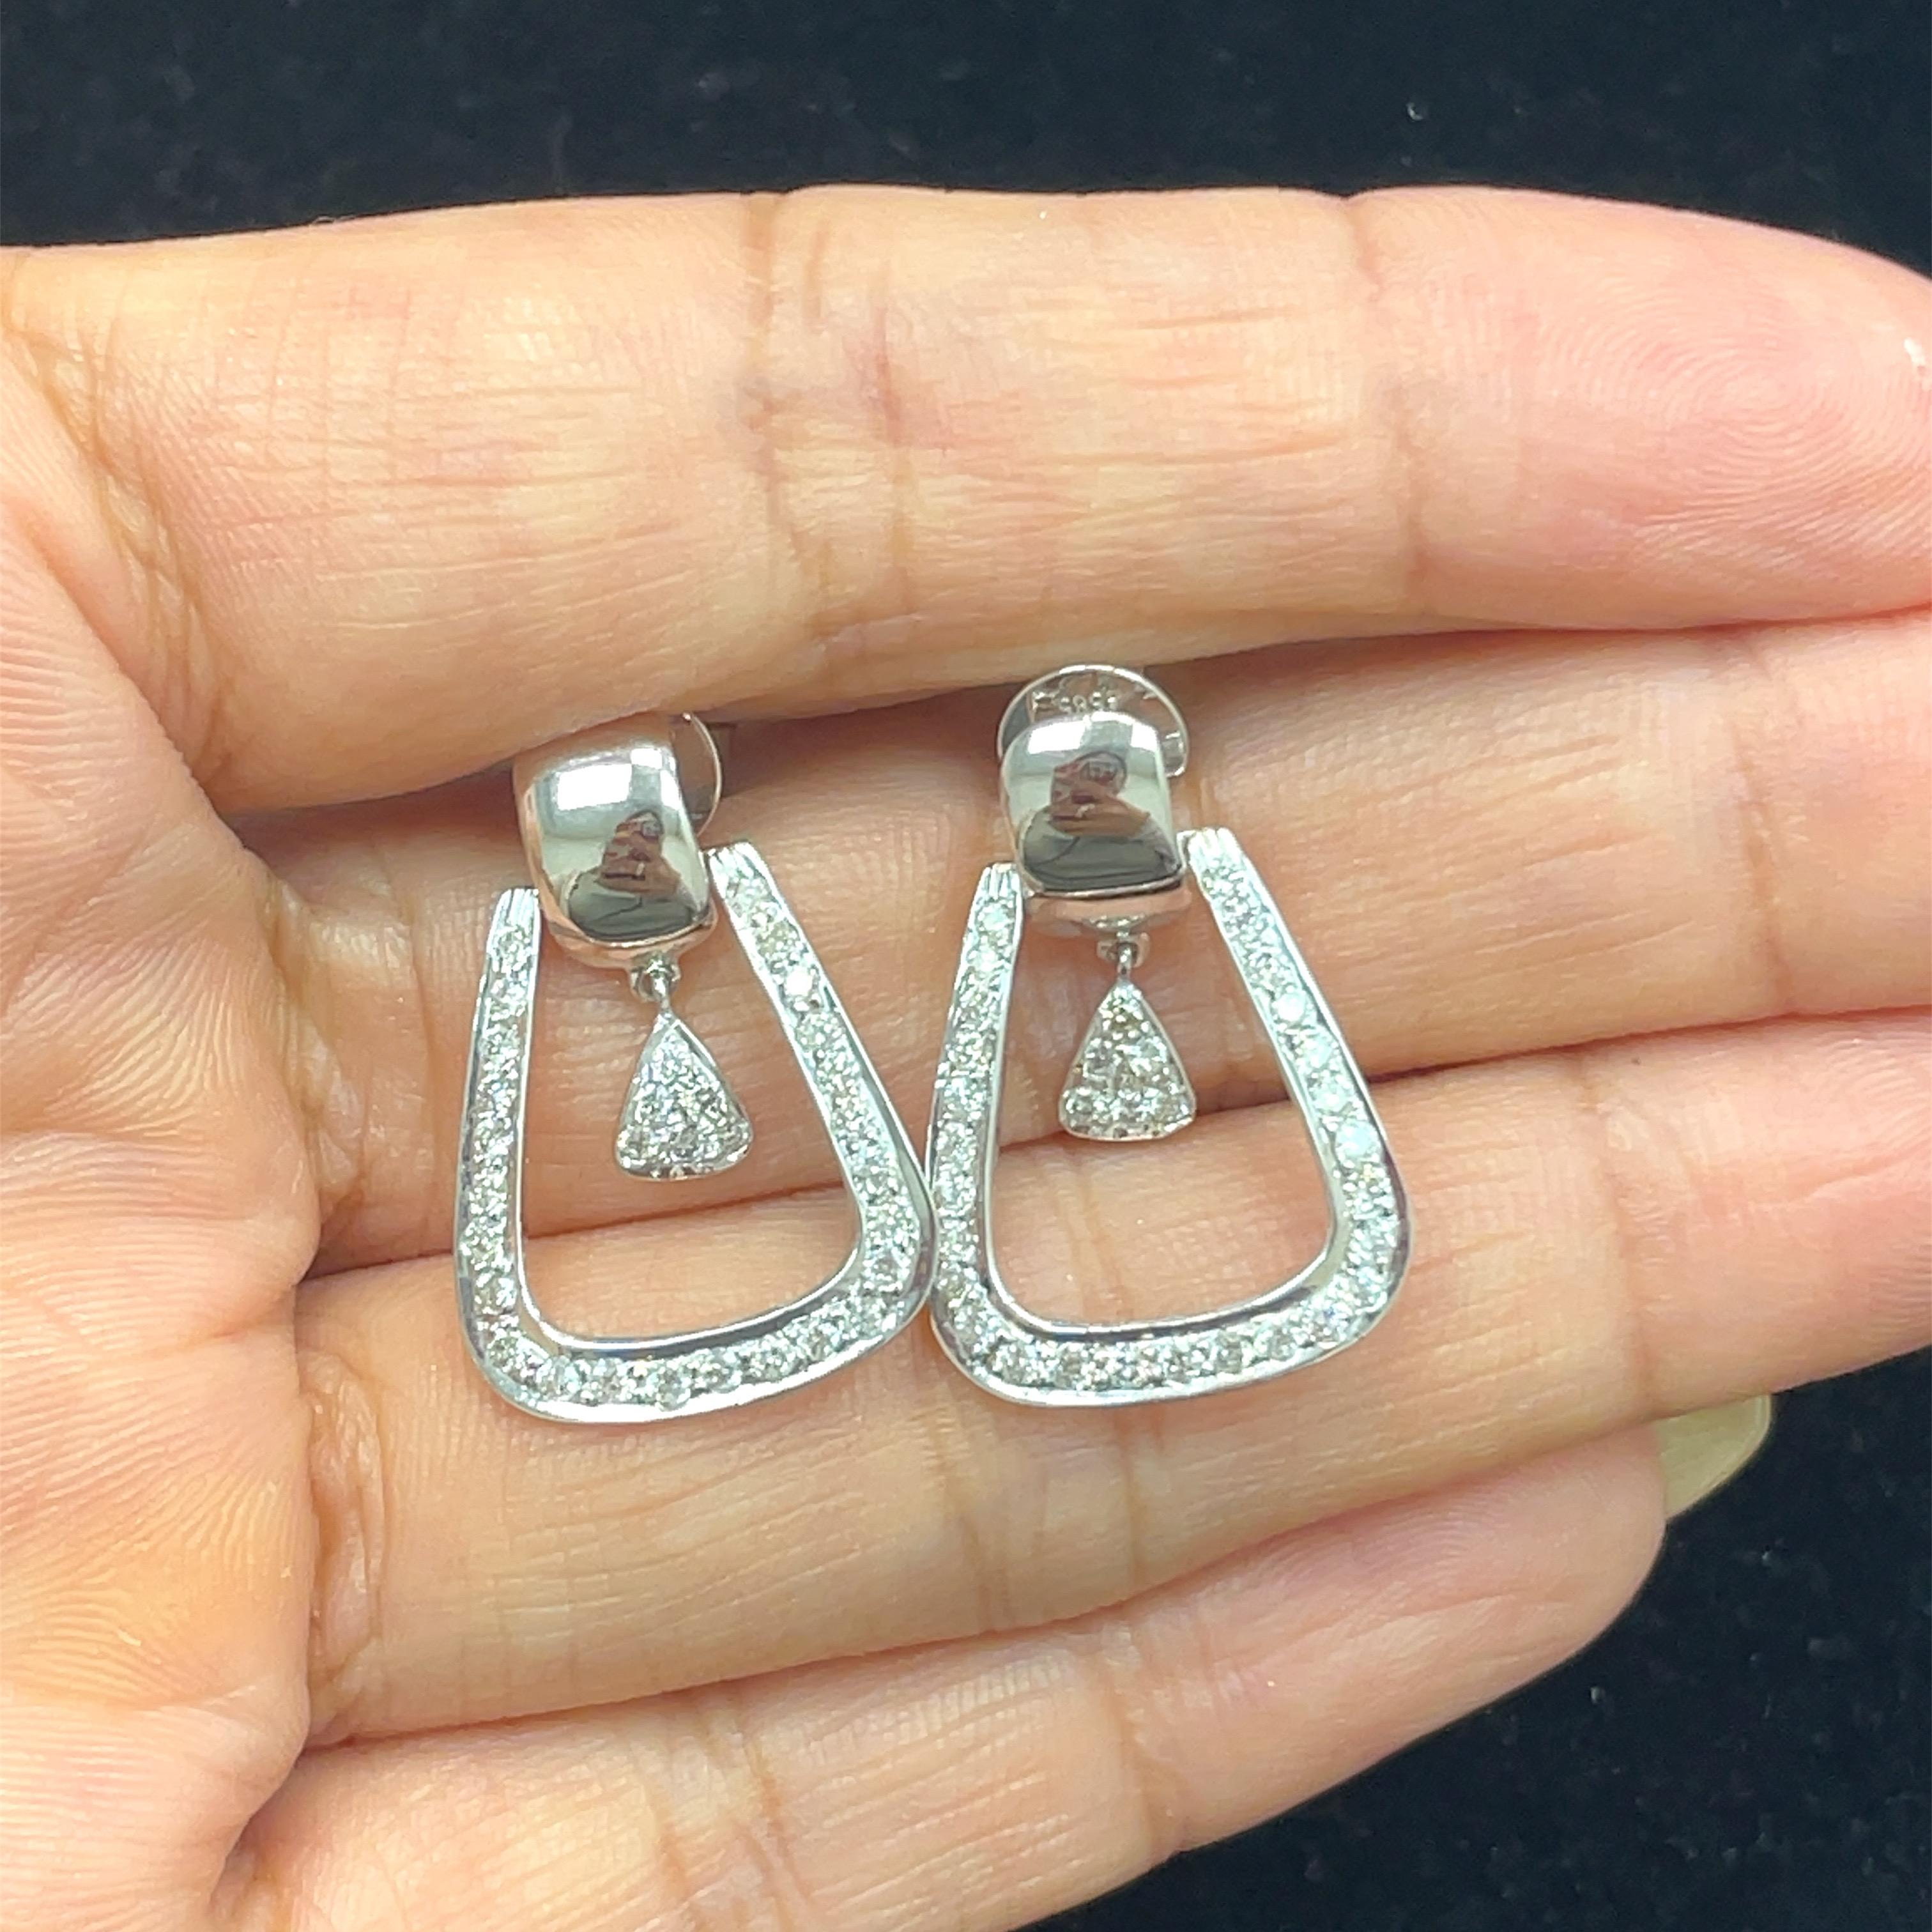 Boucles d'oreilles pendantes en diamant 14K 0.81 cts

L'élégance rencontre la géométrie dans ces étonnantes boucles d'oreilles pendantes en diamant 14K, véritable témoignage de l'artisanat et du style. 

Les diamants qui entourent les boucles